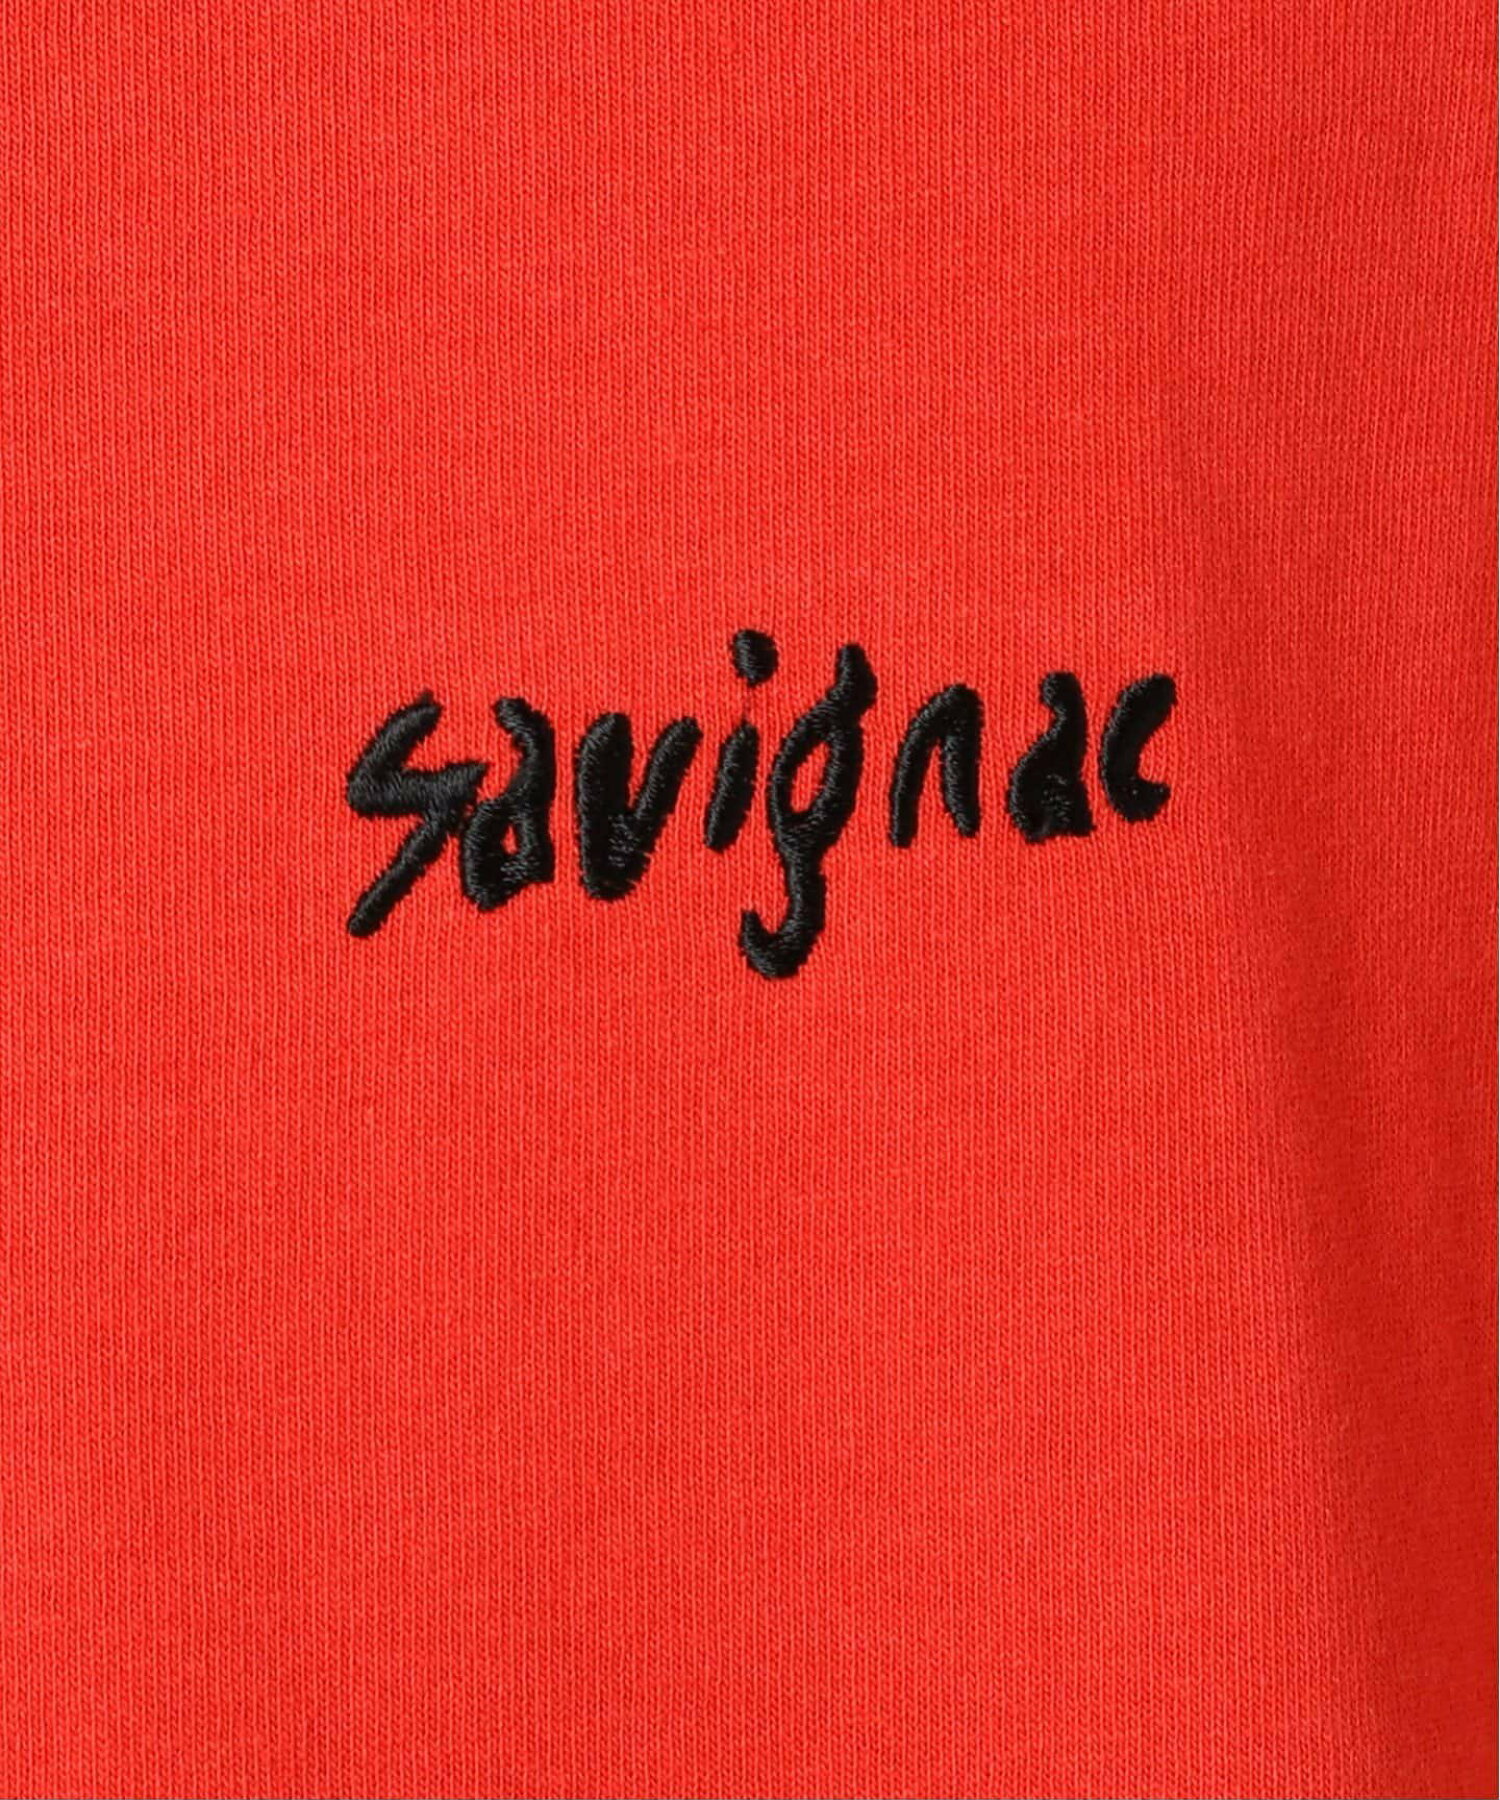 SAVIGNAC (サビニャック) 別注 French Company プリント Tシャツ